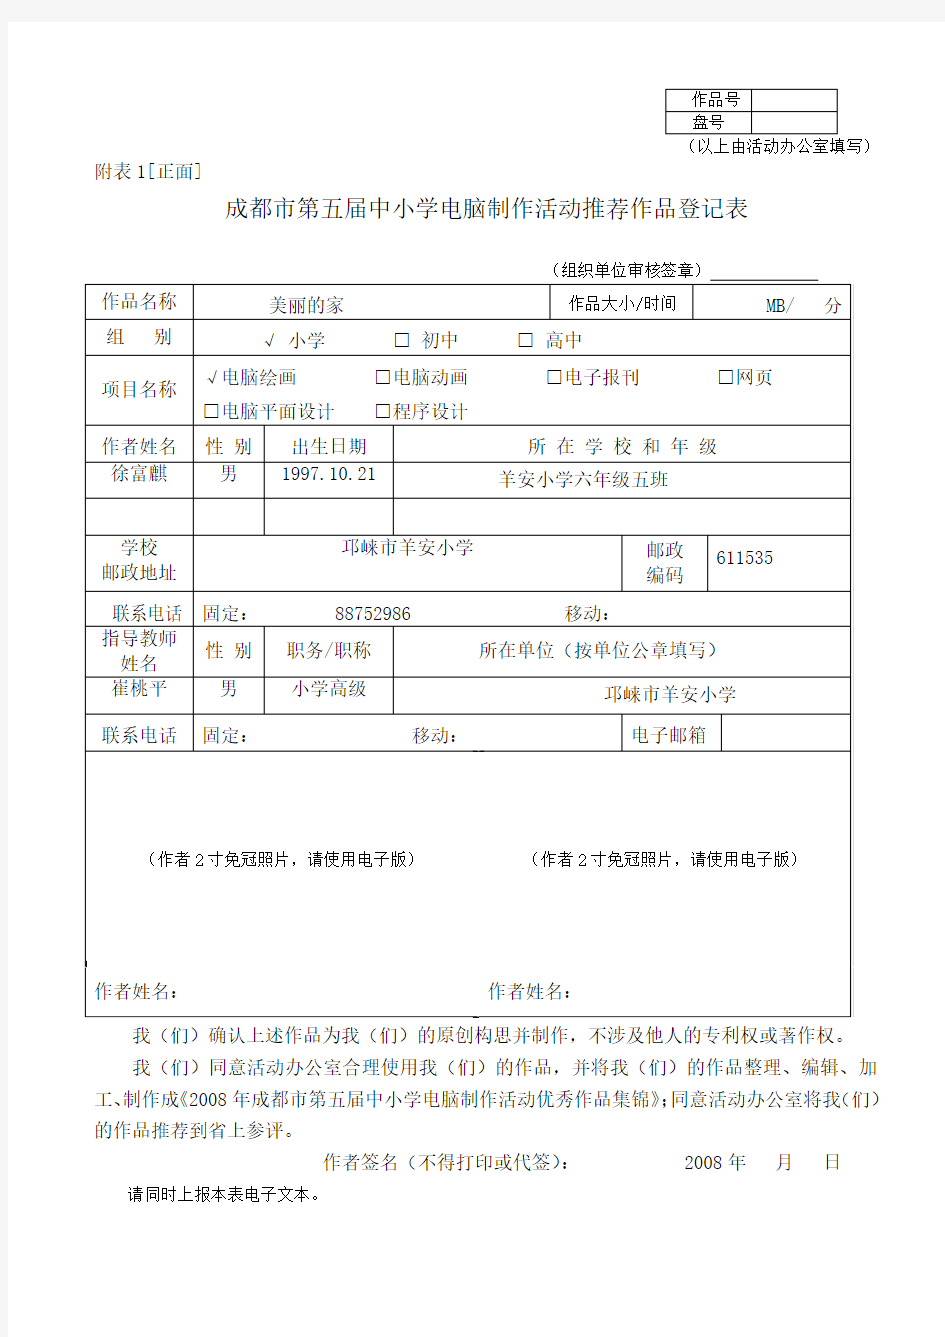 第五届学生电脑作品推荐登记表(徐富麒)